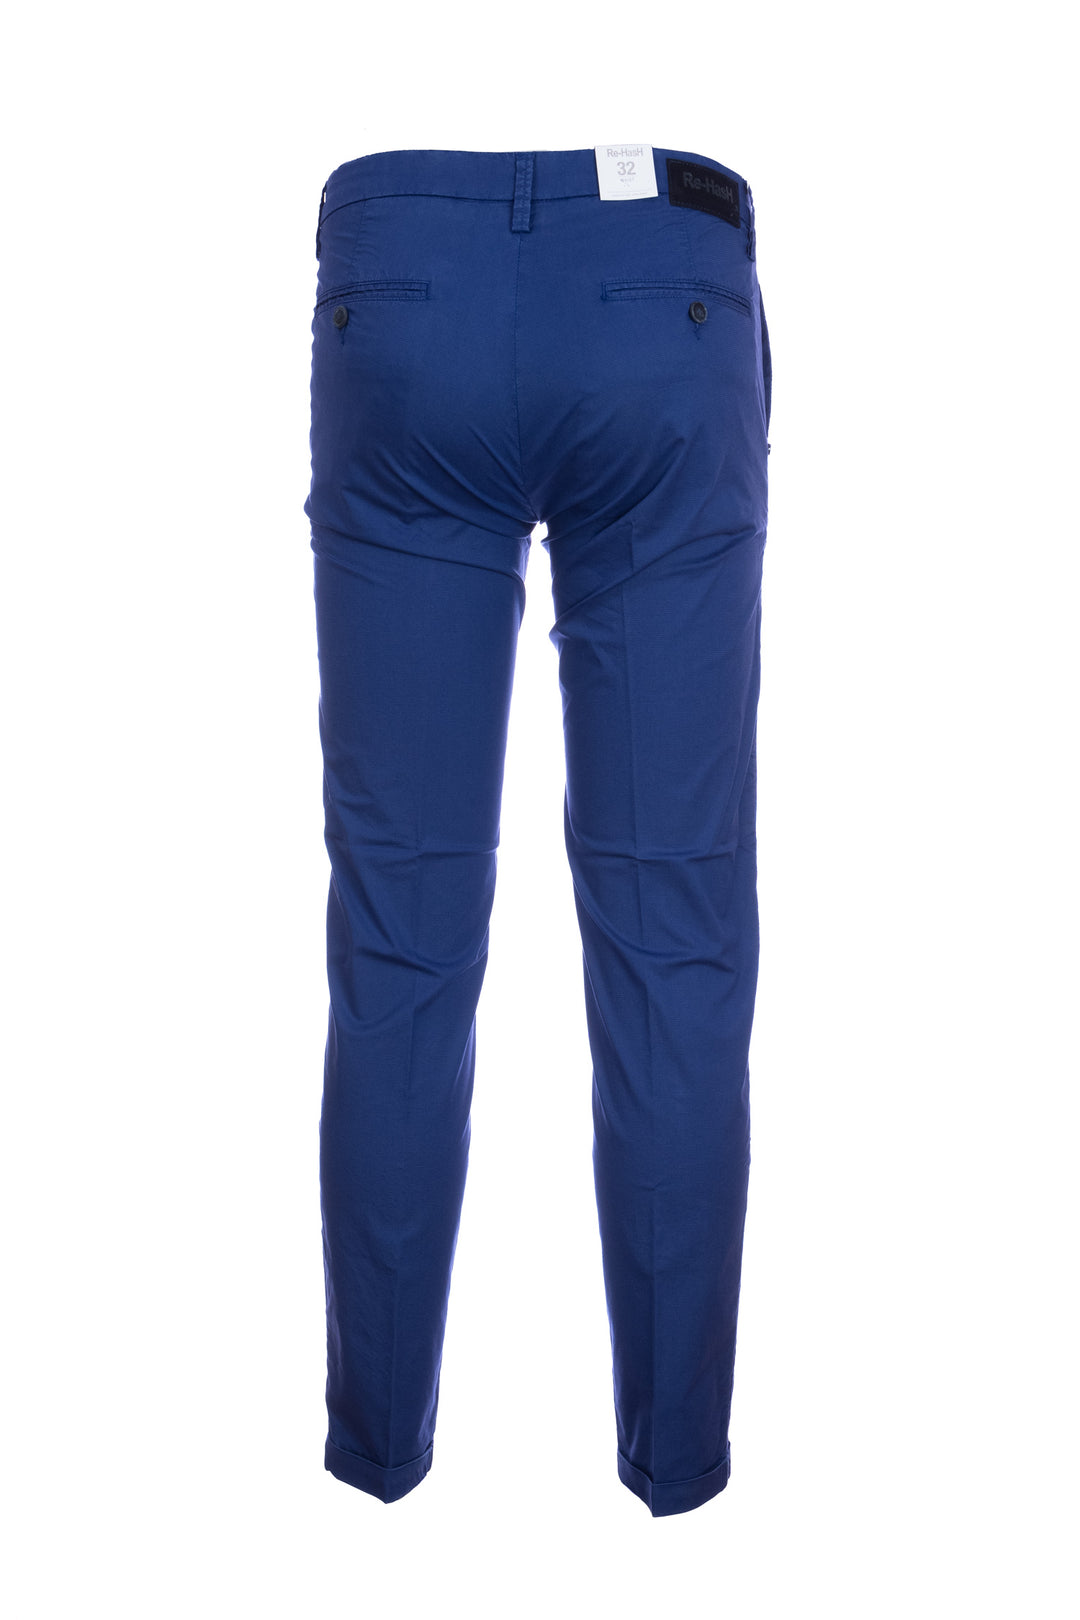 RE-HASH Pantalone chinos “MUCHA10” blu royal in cotone tencel con risvolto - Mancinelli 1954